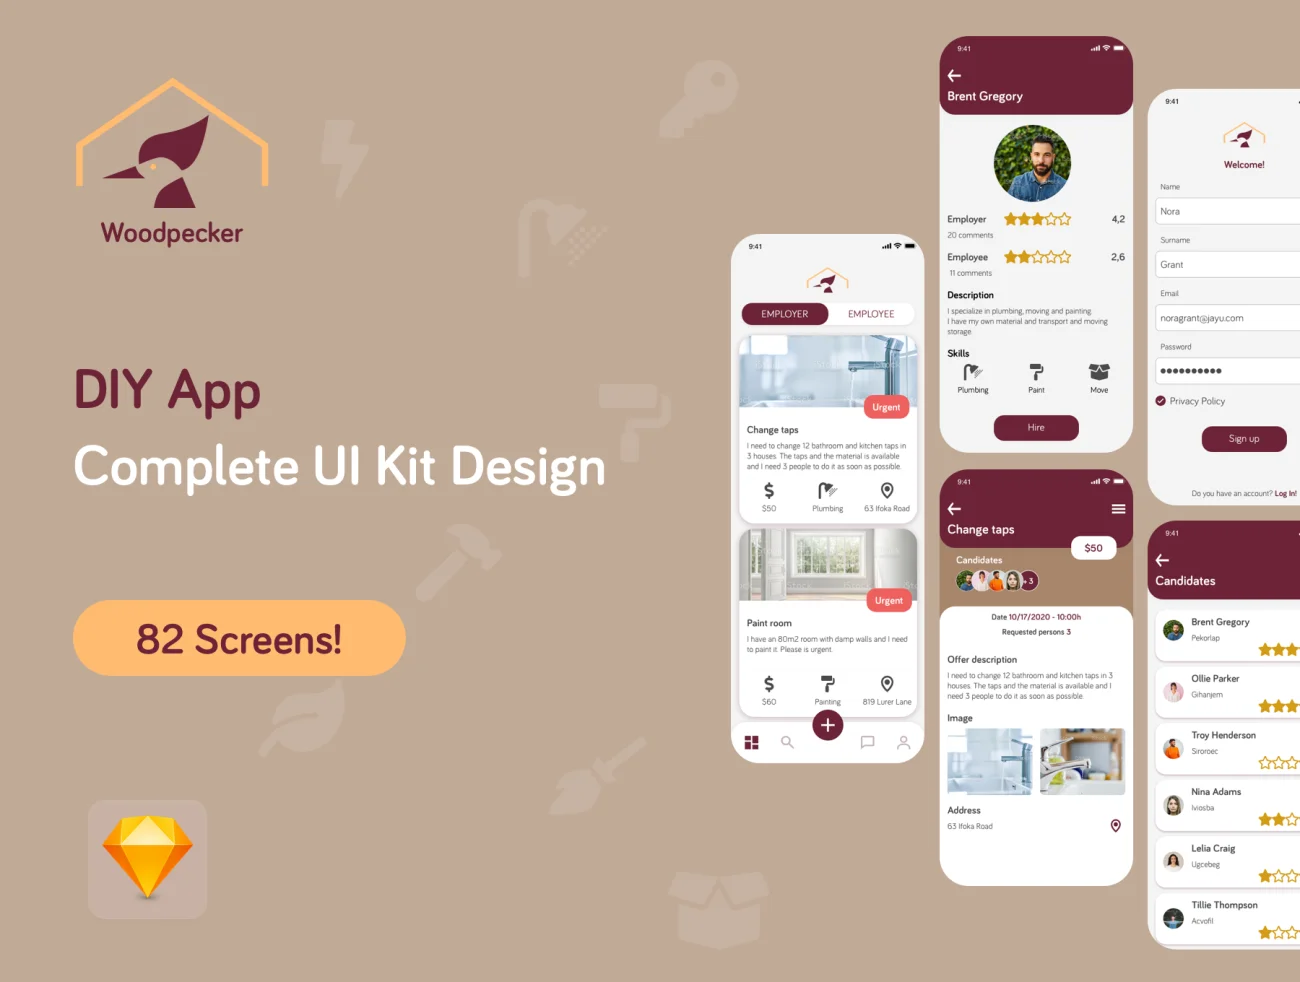 82屏手工DIY社区应用程序UI套件设计 Woodpecker App UI Kit Design插图1